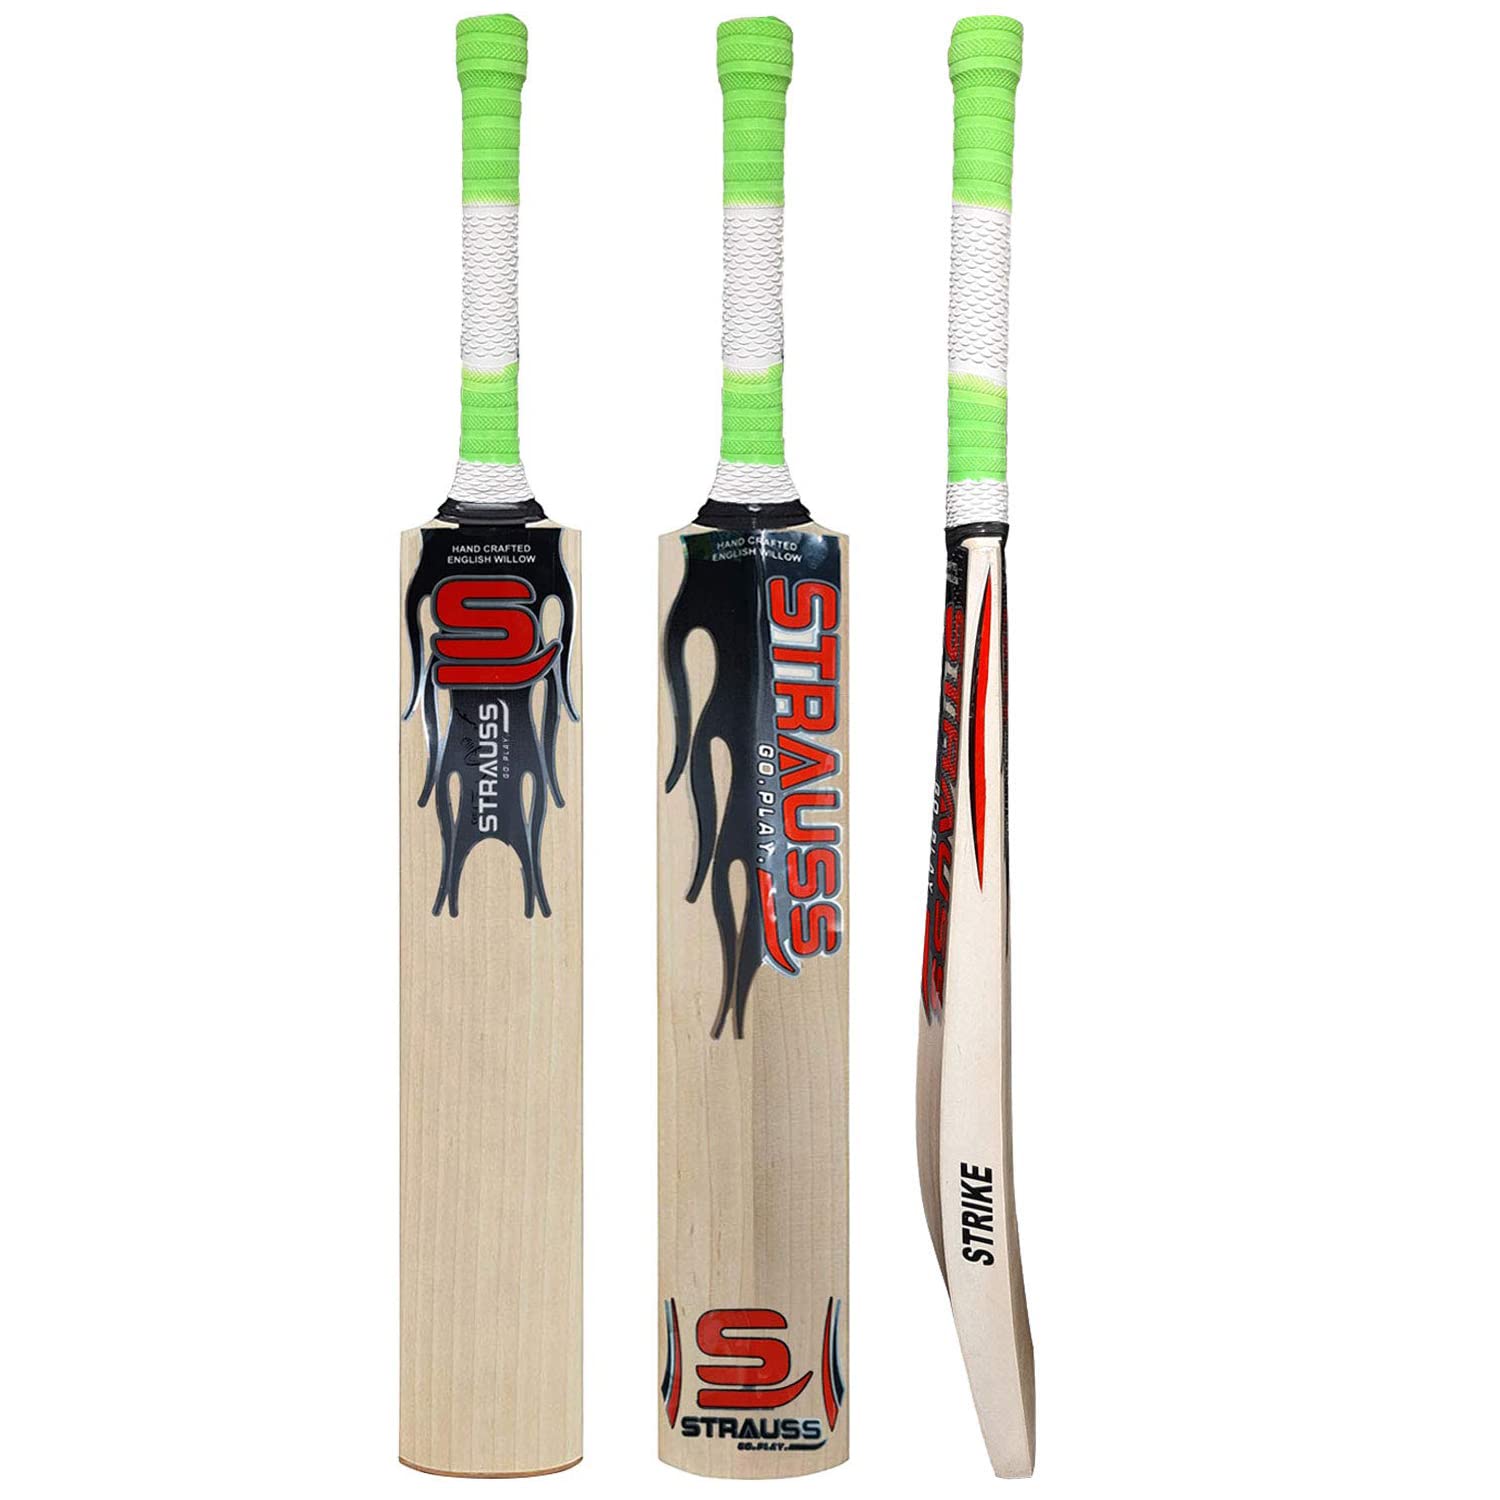 Strauss Strike Premium English Willow Cricket Bat, (Size-5)